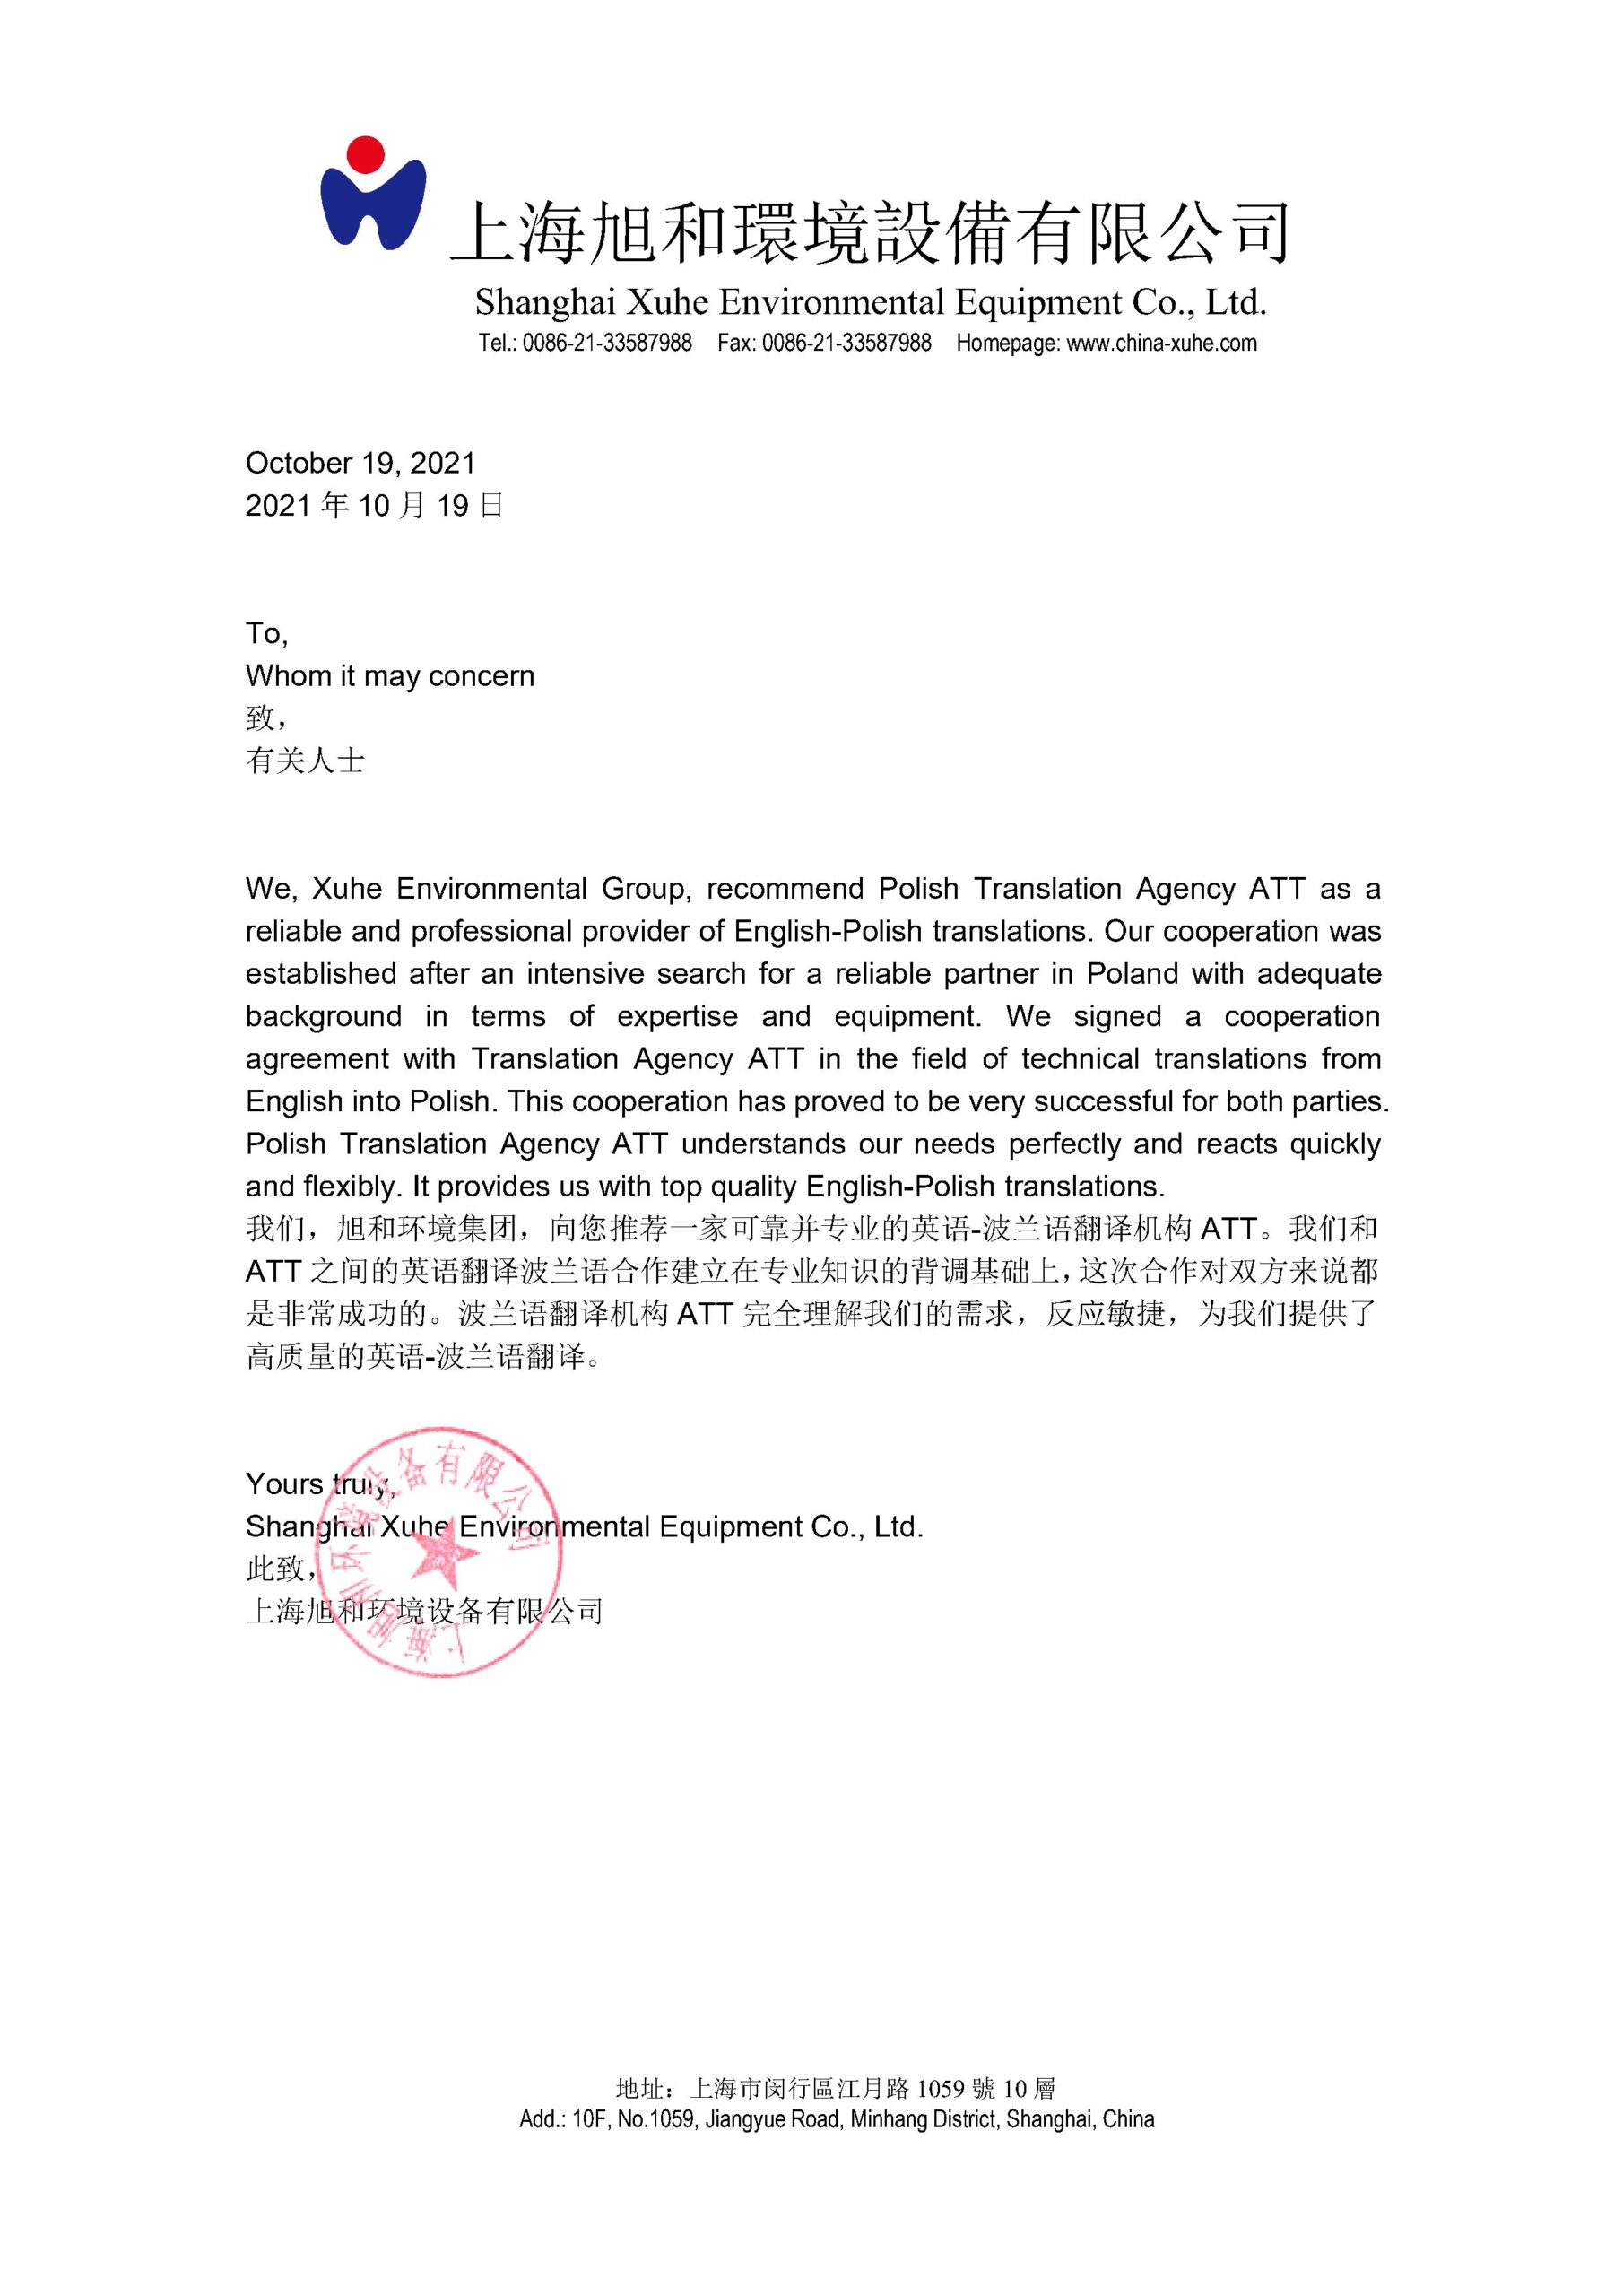 Referencje firmy Xuhe z Chin dla Biura Tłumaczeń ATT za tłumaczenia dla branży urządzeń ochrony środowiska